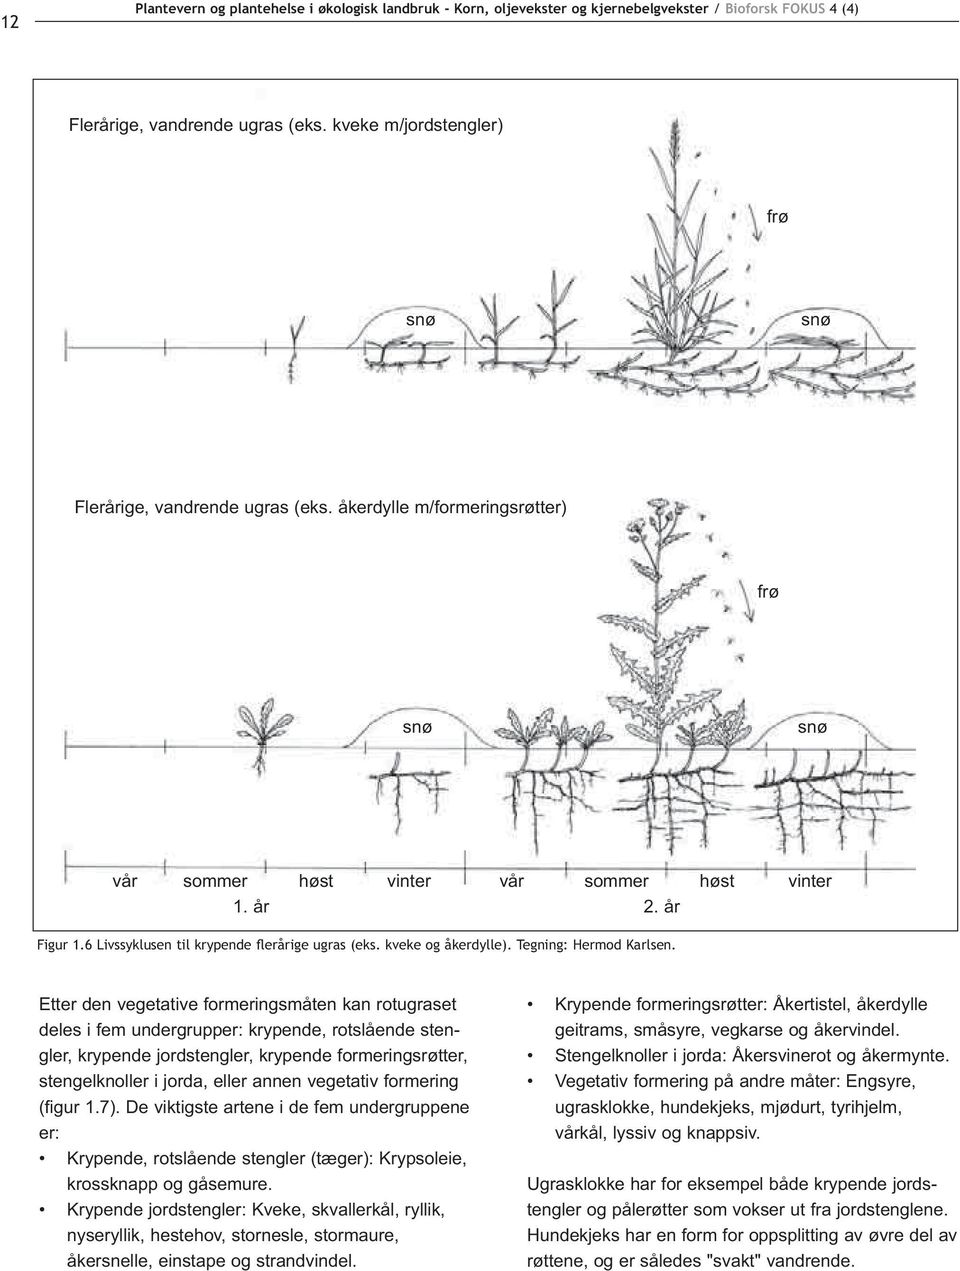 Etter den vegetative formeringsmåten kan rotugraset deles i fem undergrupper: krypende, rotslående stengler, krypende jordstengler, krypende formeringsrøtter, stengelknoller i jorda, eller annen